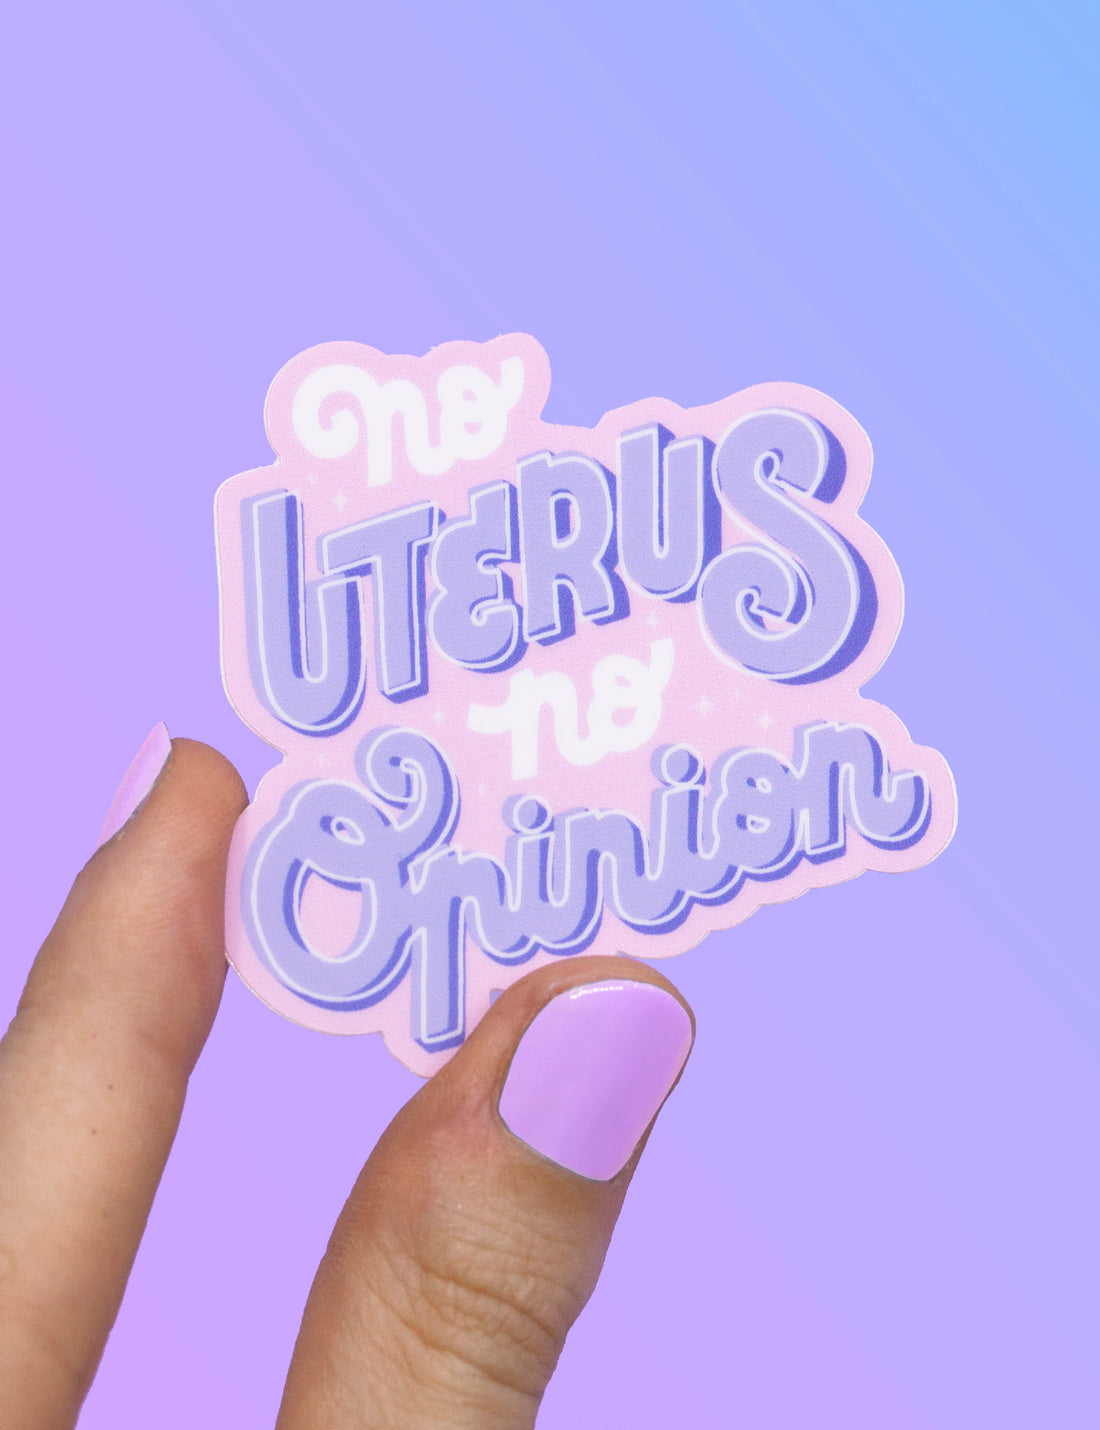 No Uterus, No Opinion STICKER